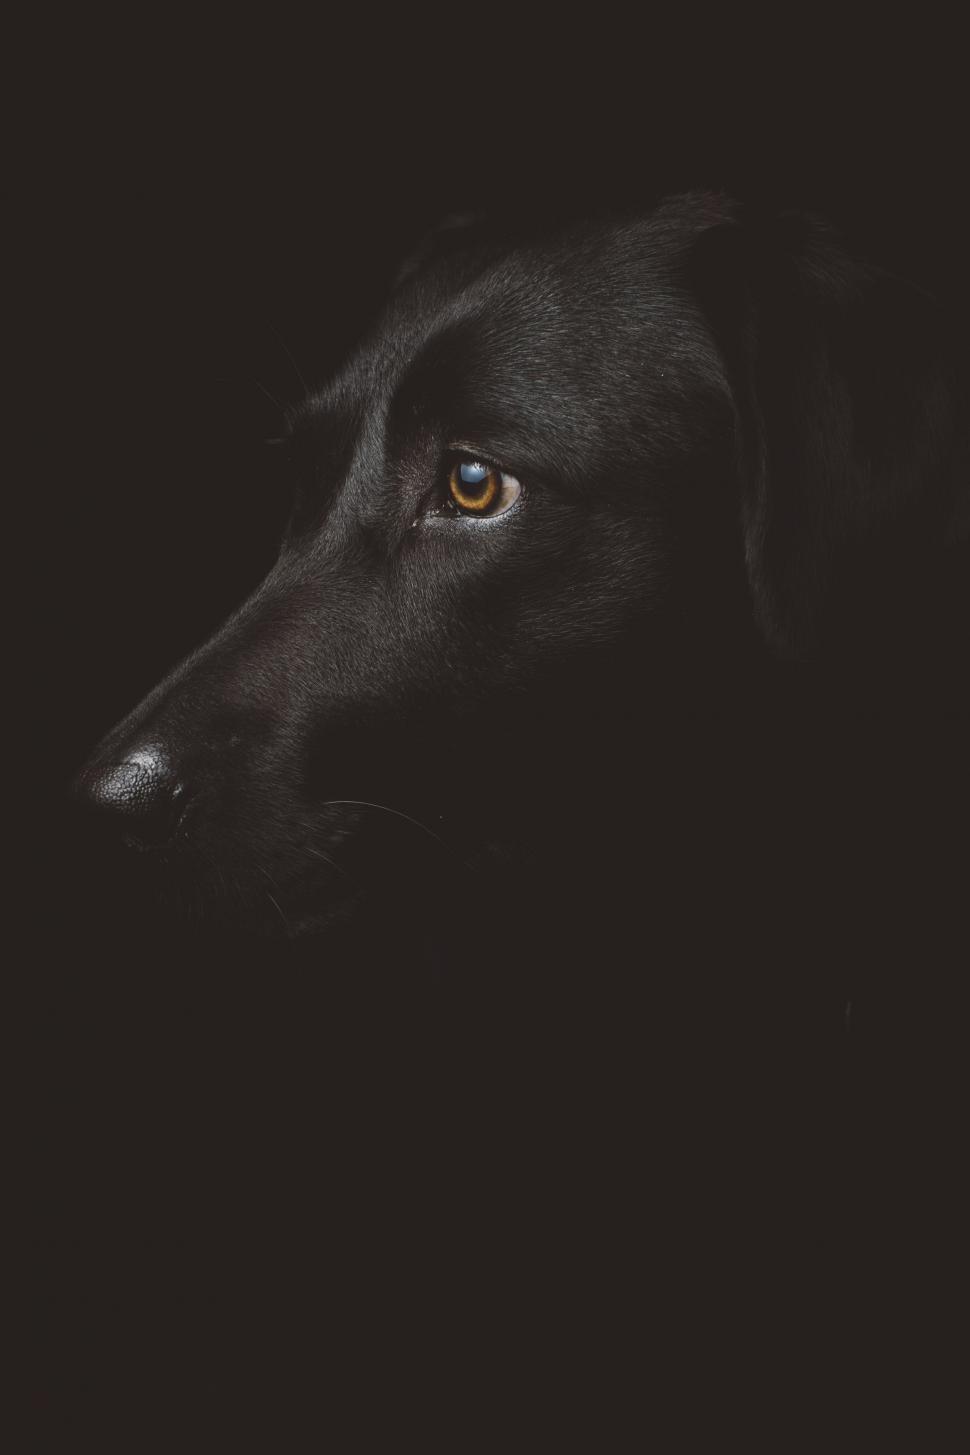 Free Image of Black Dog Eye  